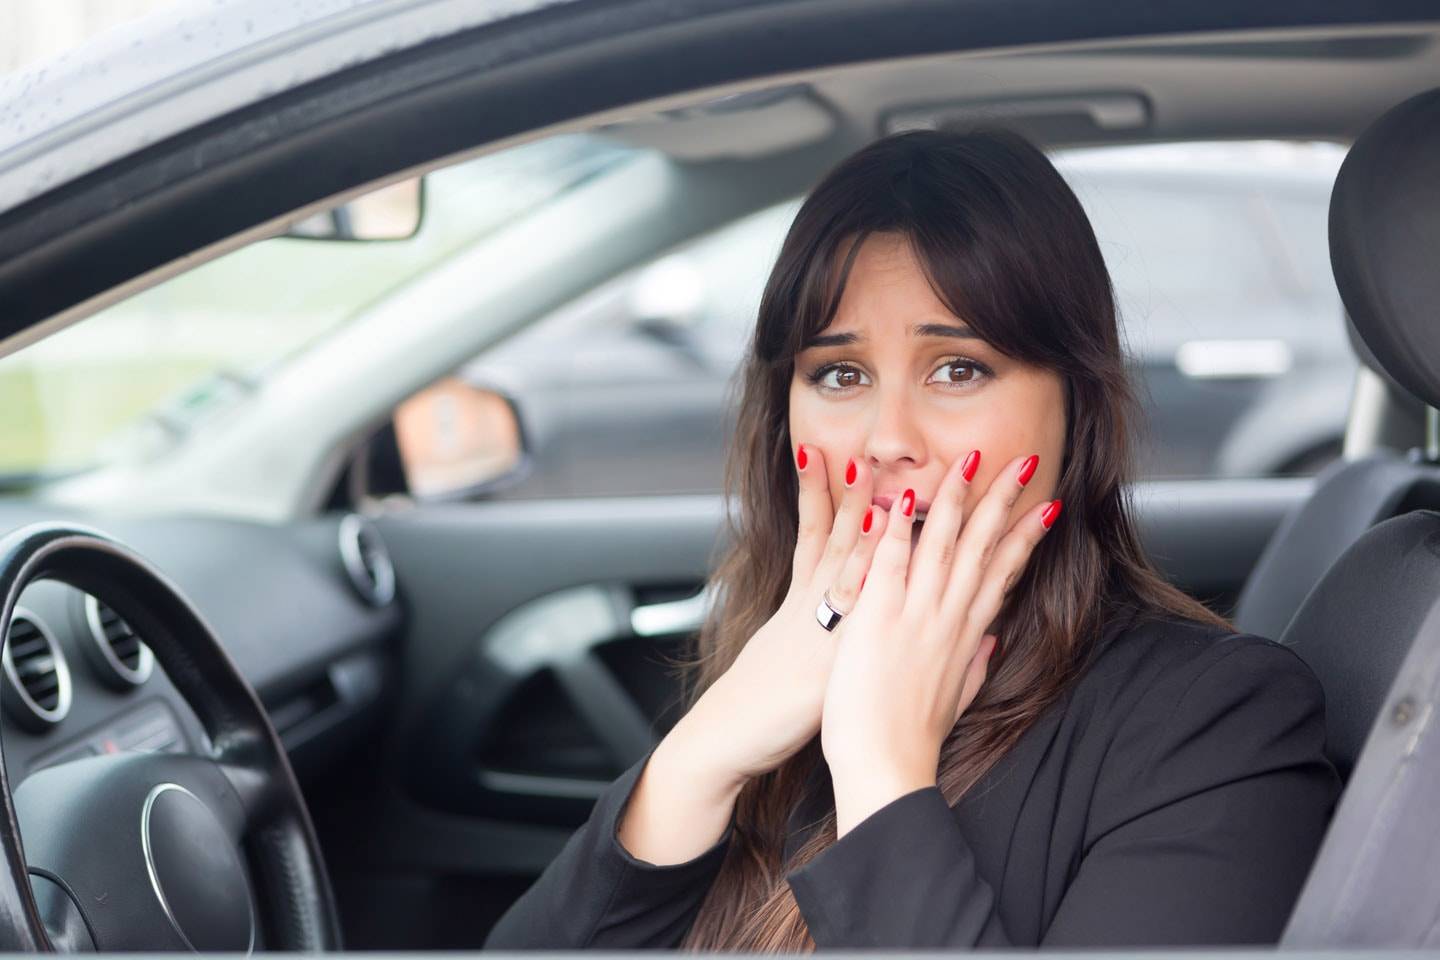 Как побороть страх вождения автомобиля новичку и женщине в городе самостоятельно | eraminerals.ru